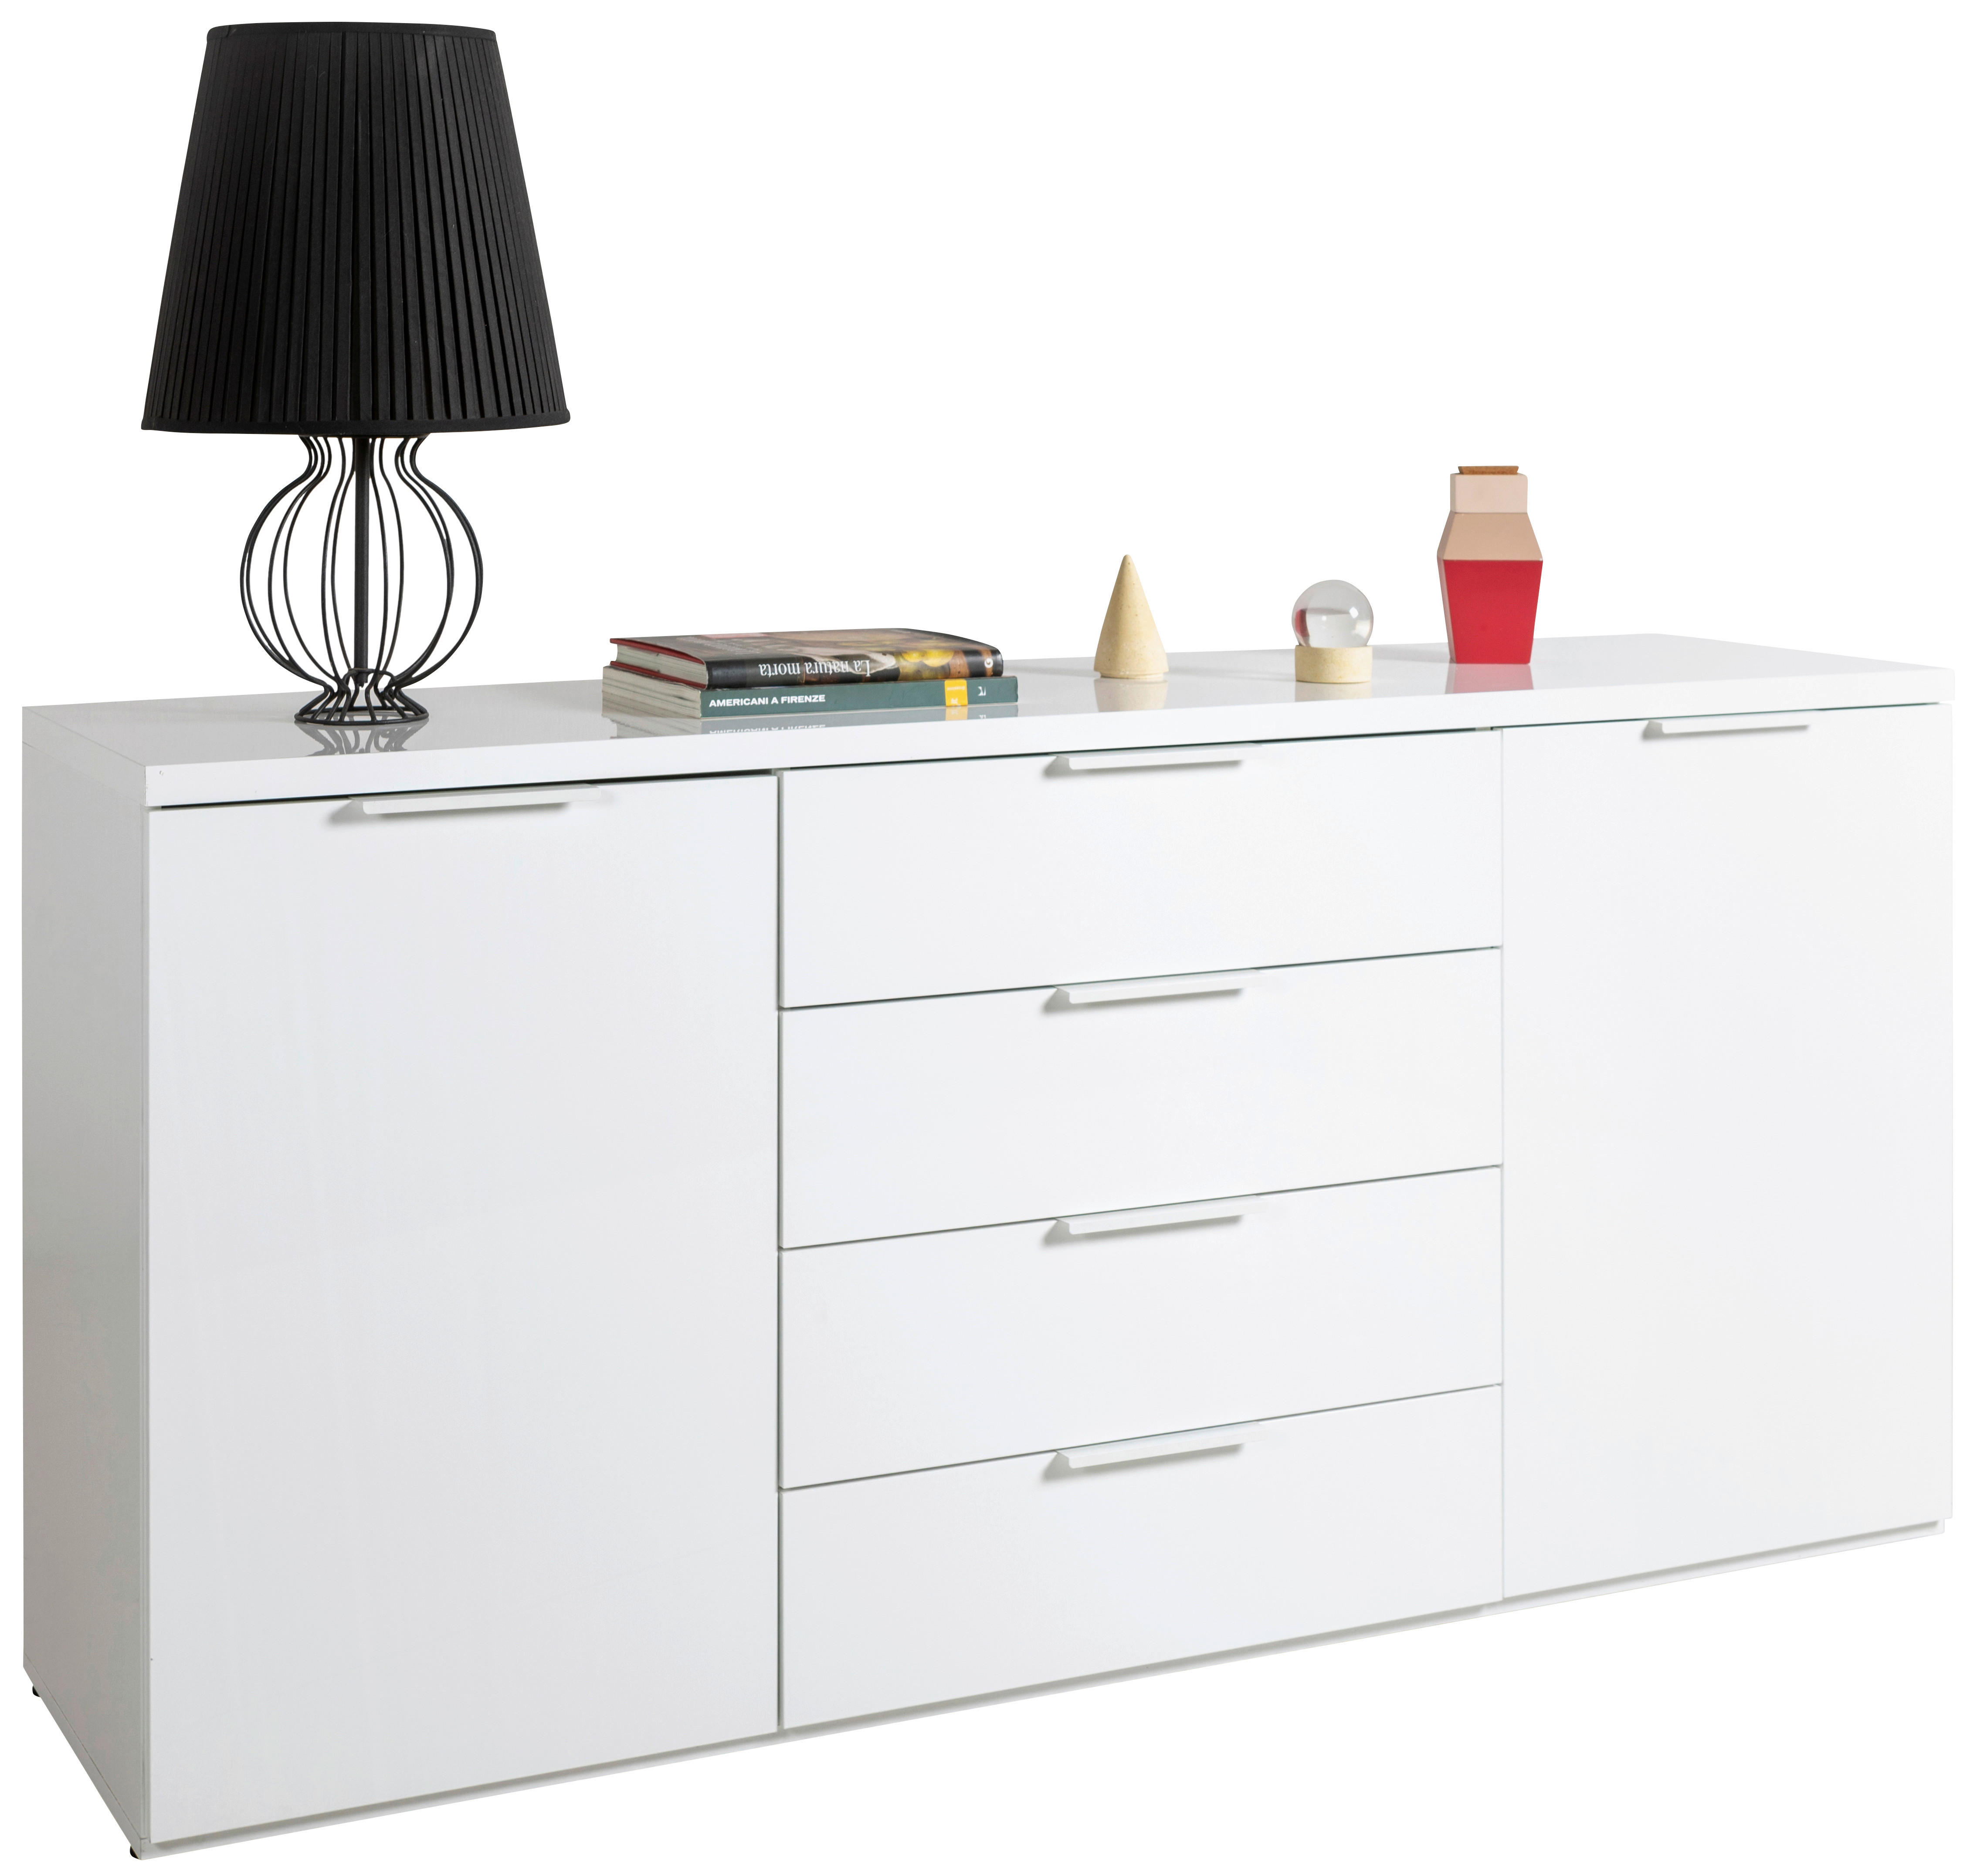 KOMODA   170/82/44 cm   bijela visoki sjaj  - bijela/bijela visoki sjaj, Moderno, drvni materijal (170/82/44cm) - Modern Living